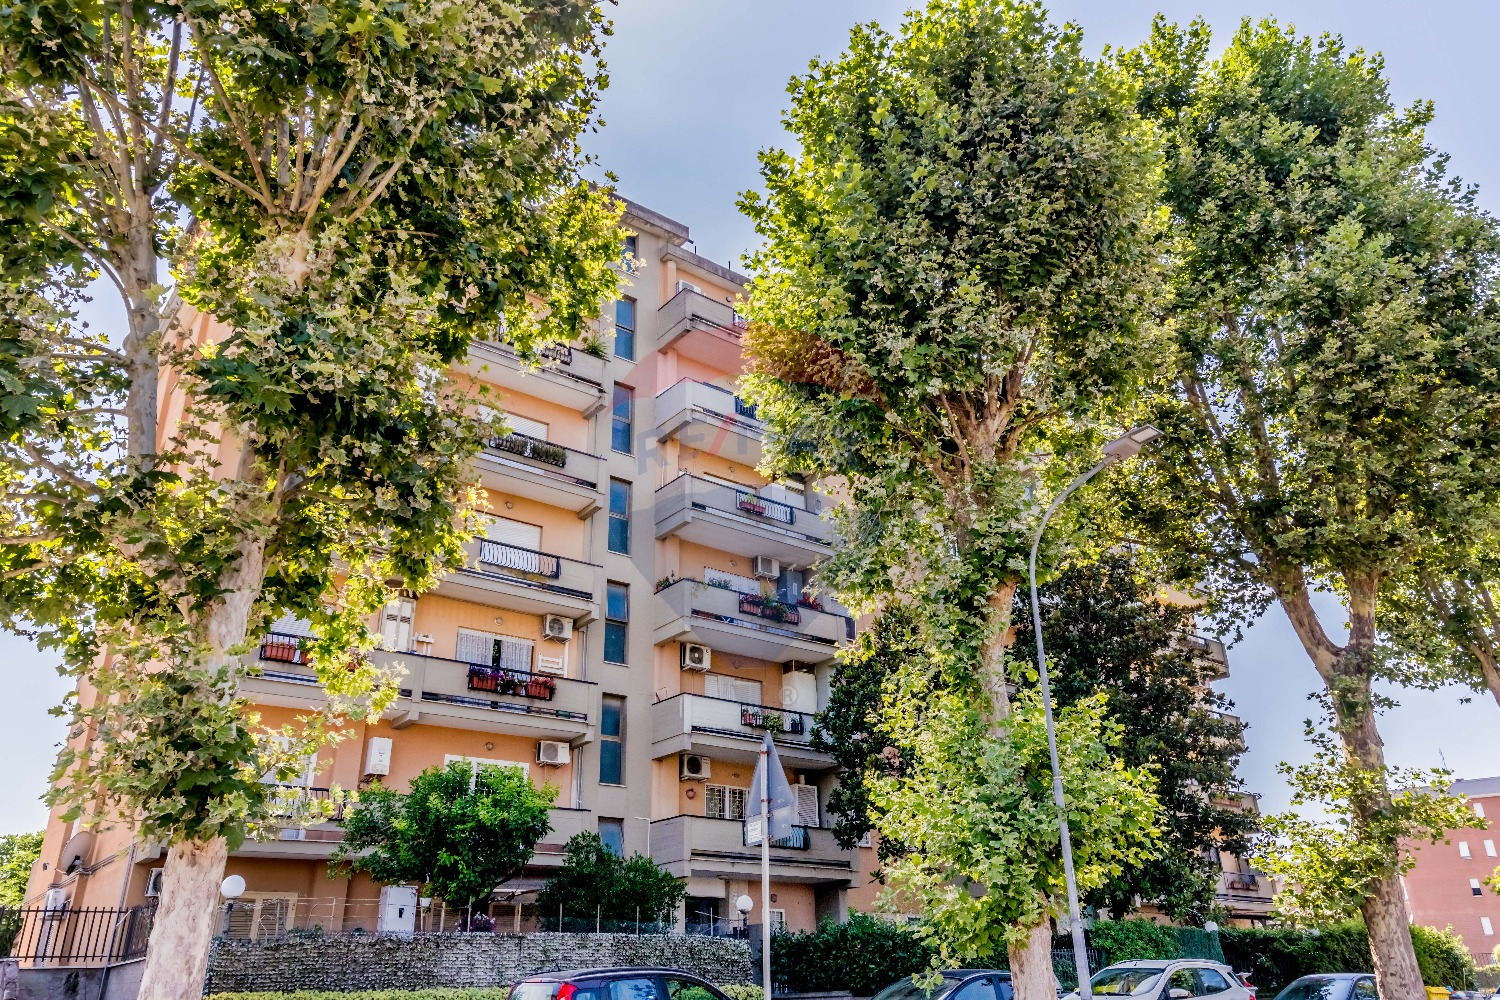 Appartamento in vendita a Guidonia Montecelio, 2 locali, prezzo € 129.000 | CambioCasa.it